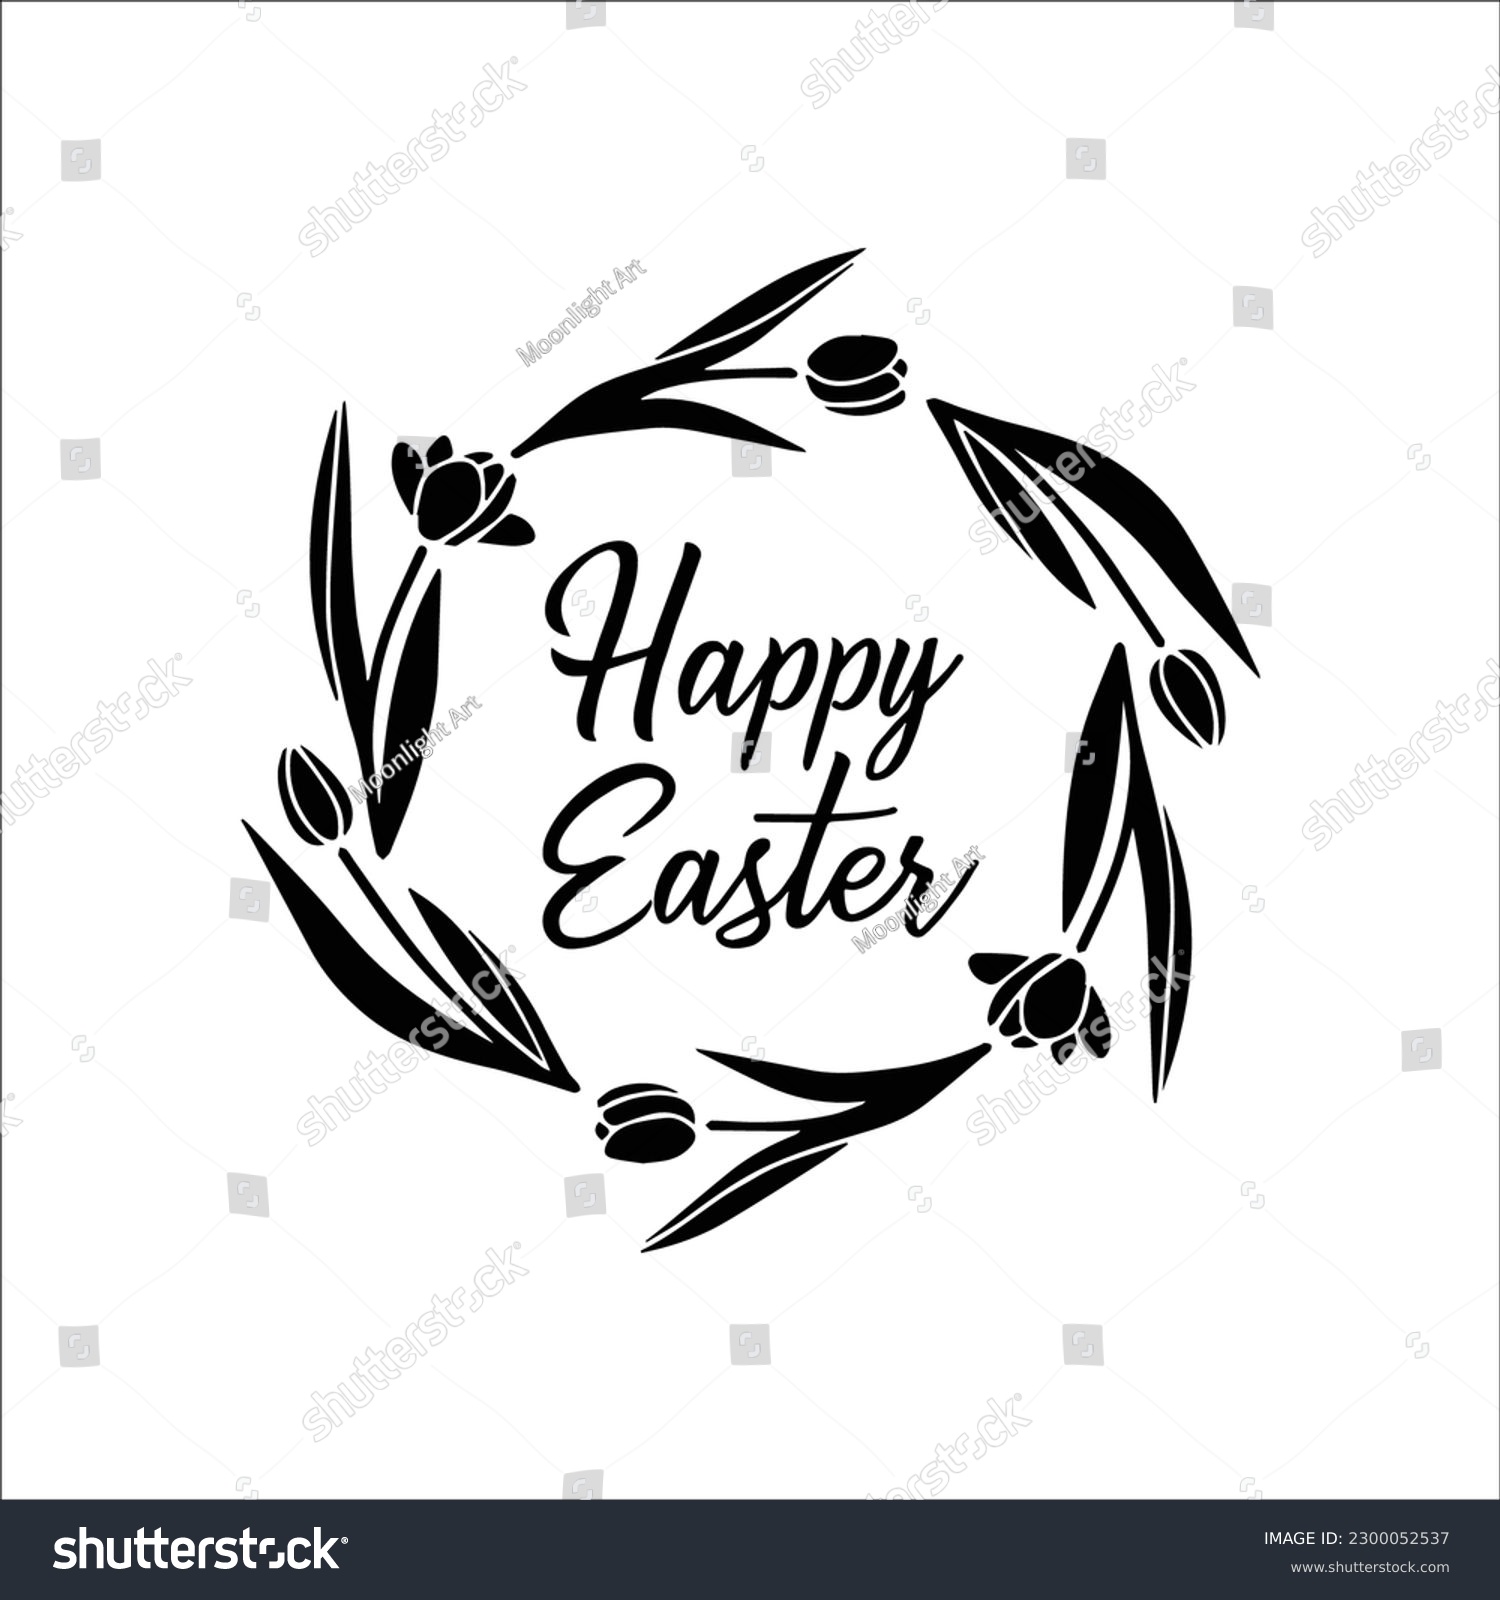 SVG of Happy Easter SVG, Happy Easter floral wreath svg, Easter circle monogram svg, Spring wreath flower svg, Floral frame svg